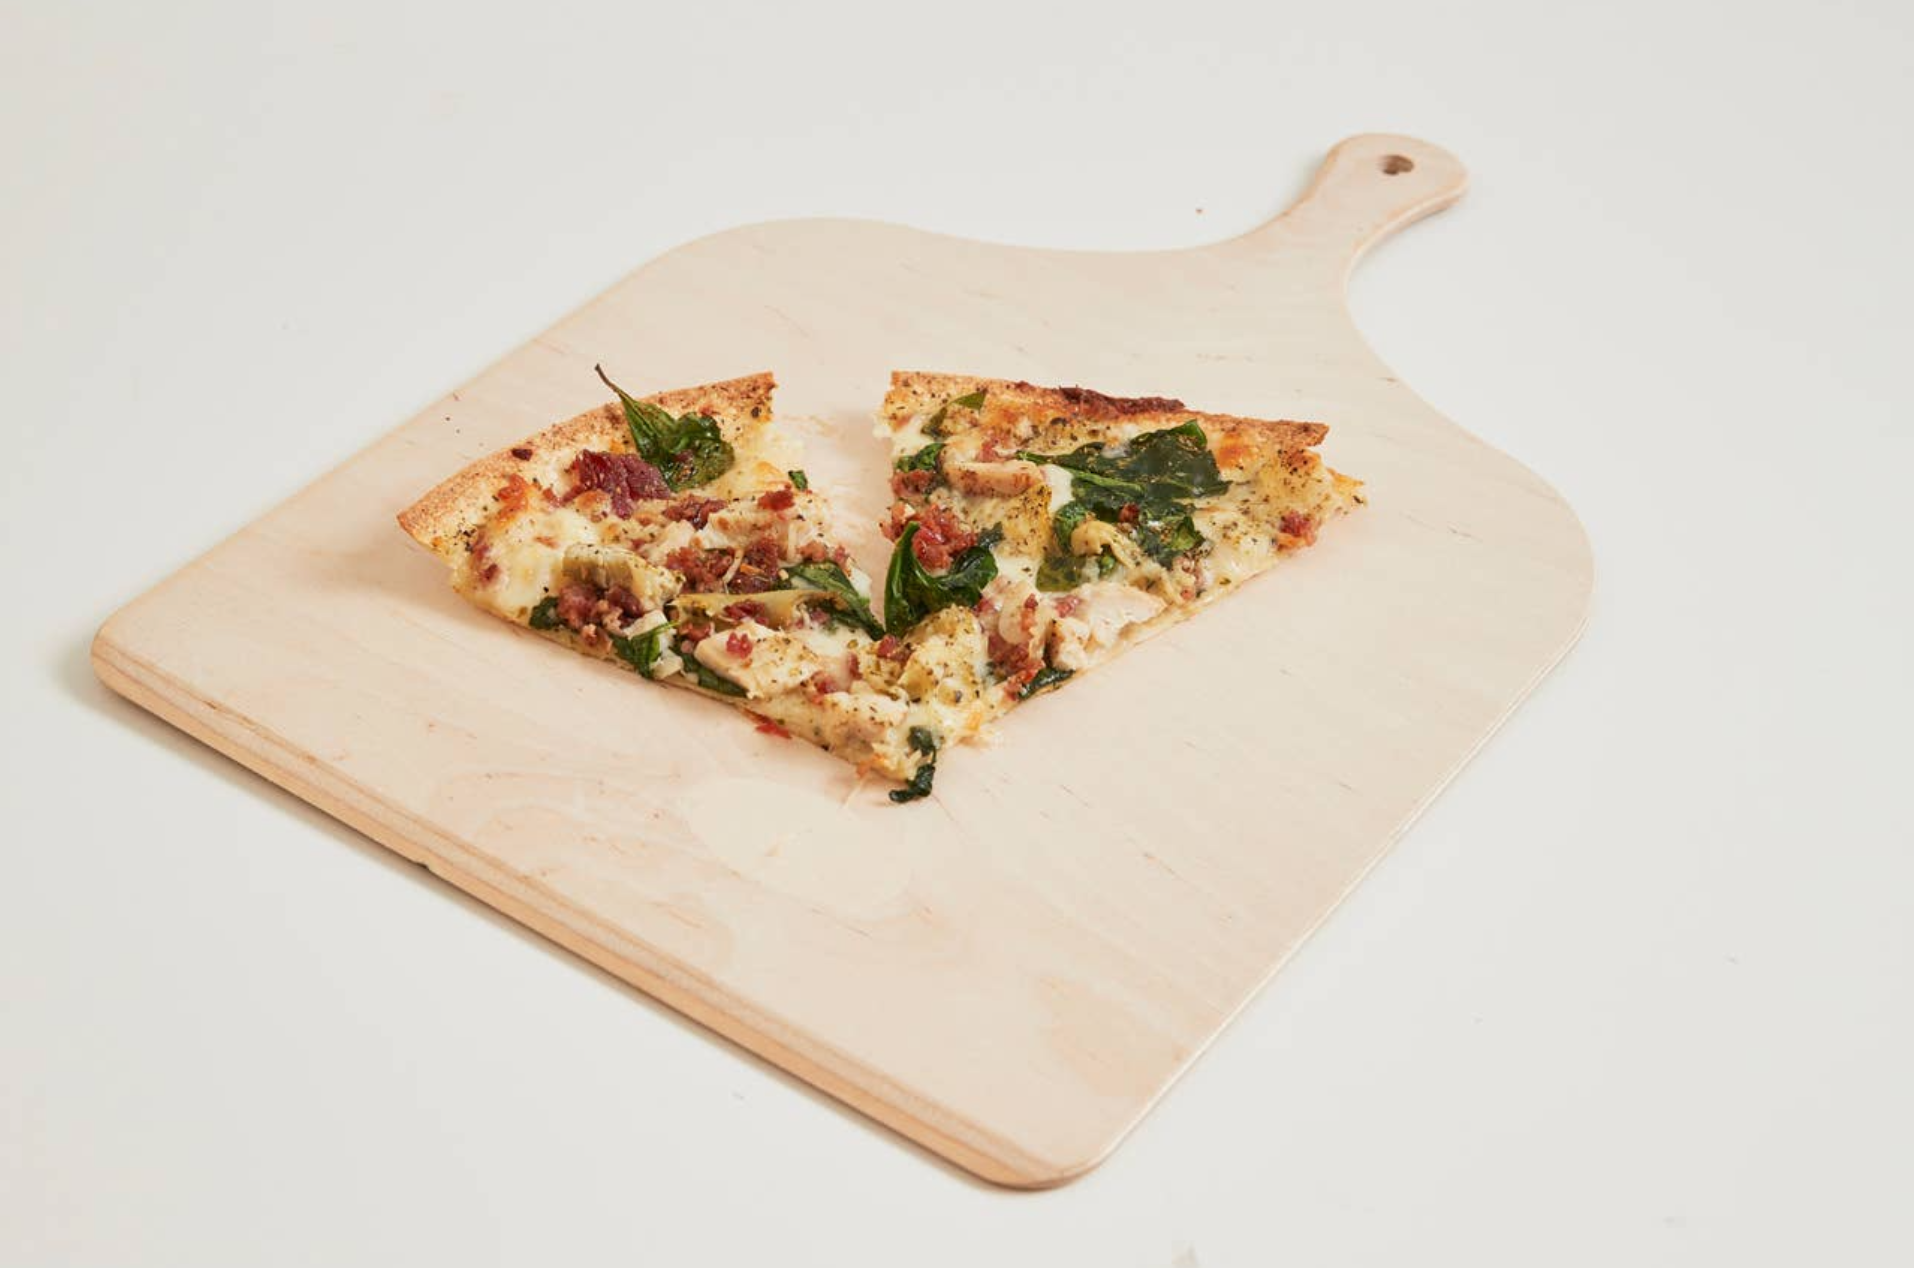 Pizza Board, Pizza Slicer, and Wood Burner Set